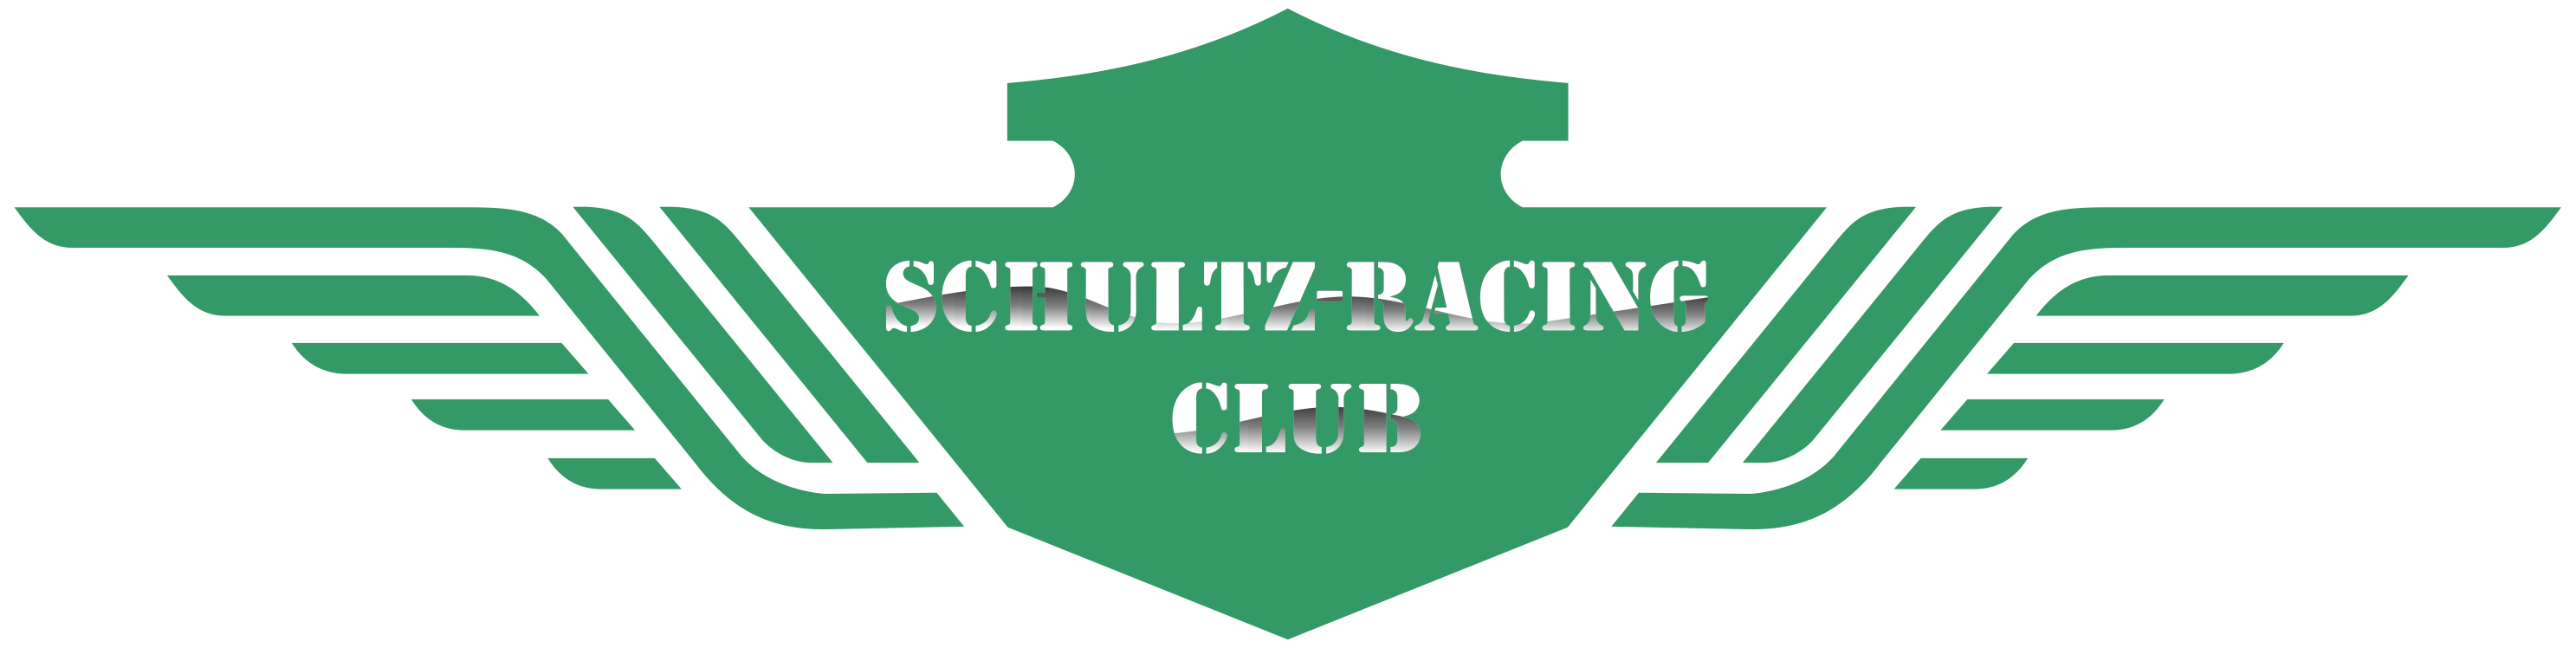 schultz racing